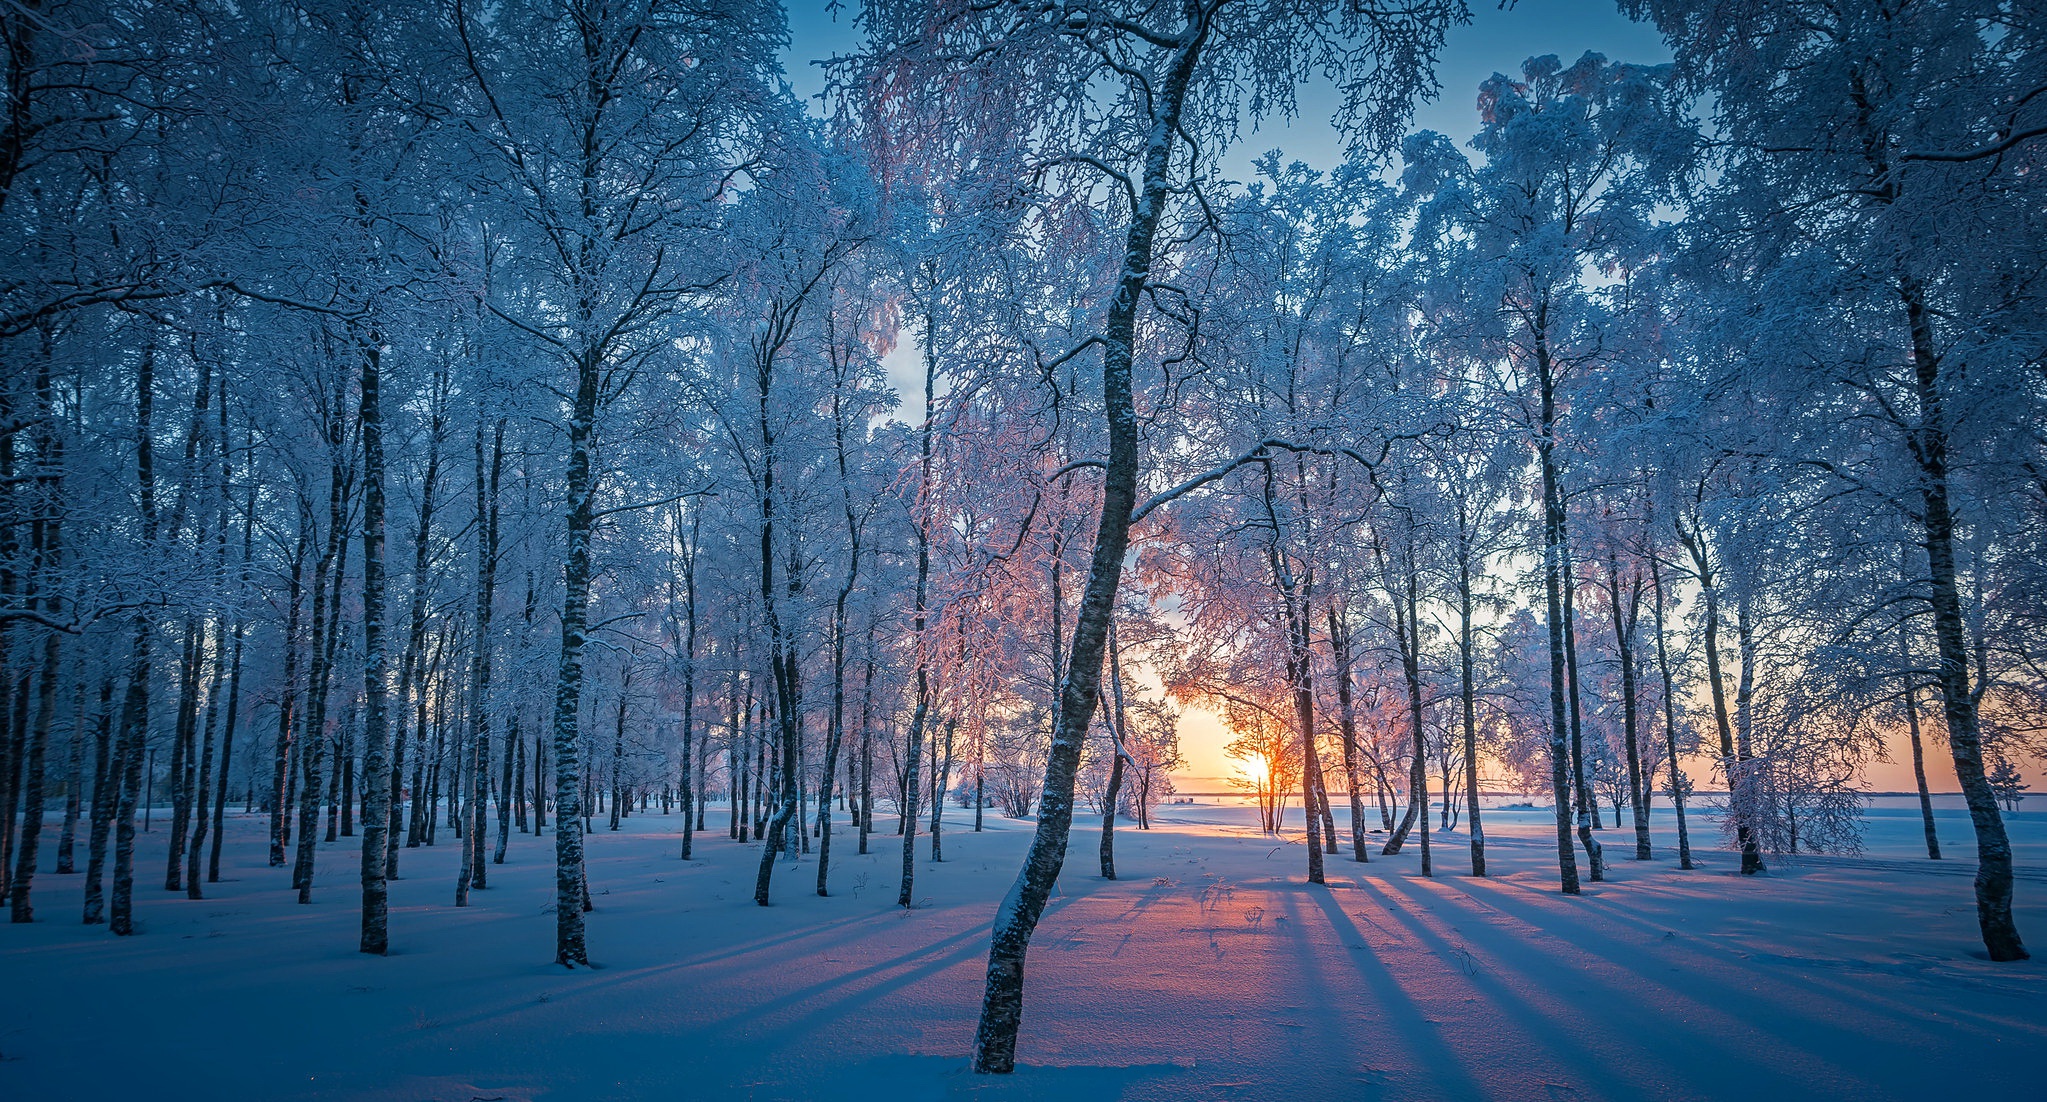 Скачать обои бесплатно Зима, Природа, Снег, Лес, Восход Солнца, Земля/природа картинка на рабочий стол ПК